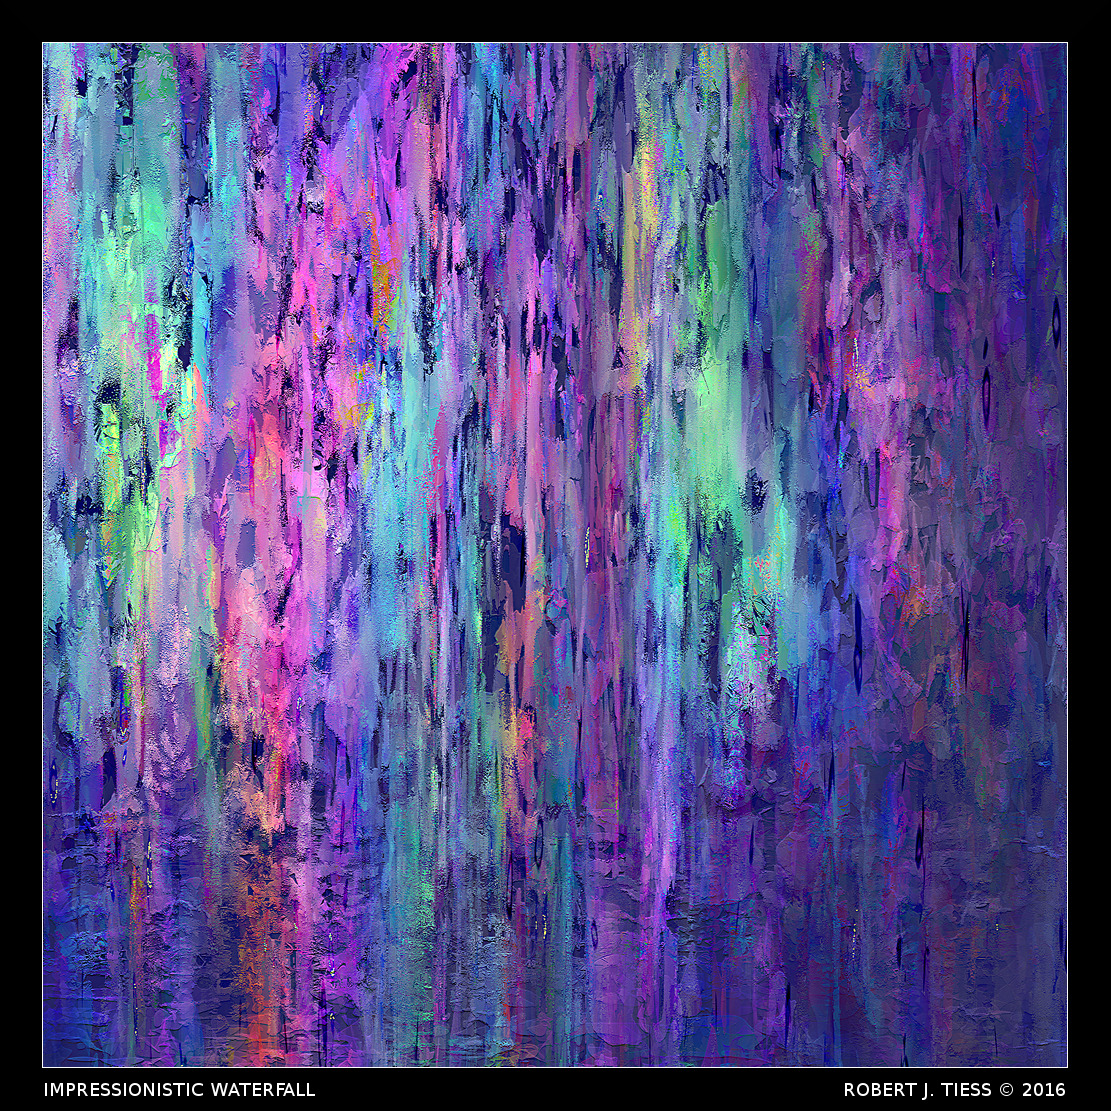 Impressionistic Waterfall - By Robert J. Tiess